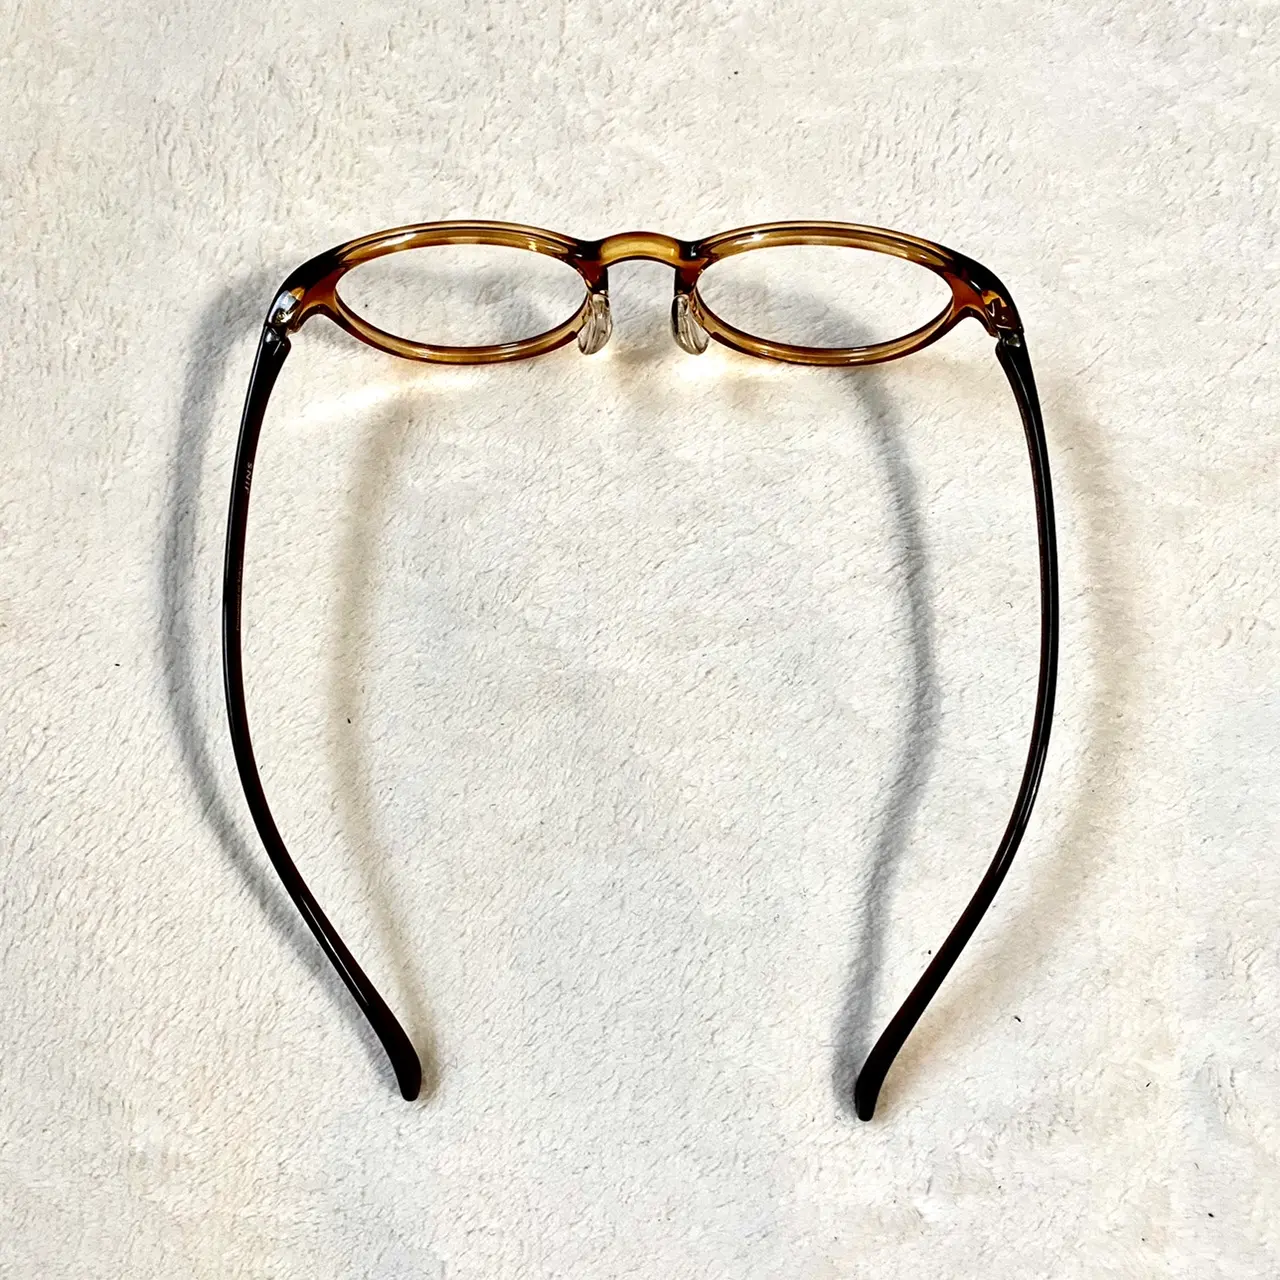 Jins の おうち時間に着替えるメガネ を リモートワーク中のライターがお試ししてみた ファッション コーディネート 代 Daily More